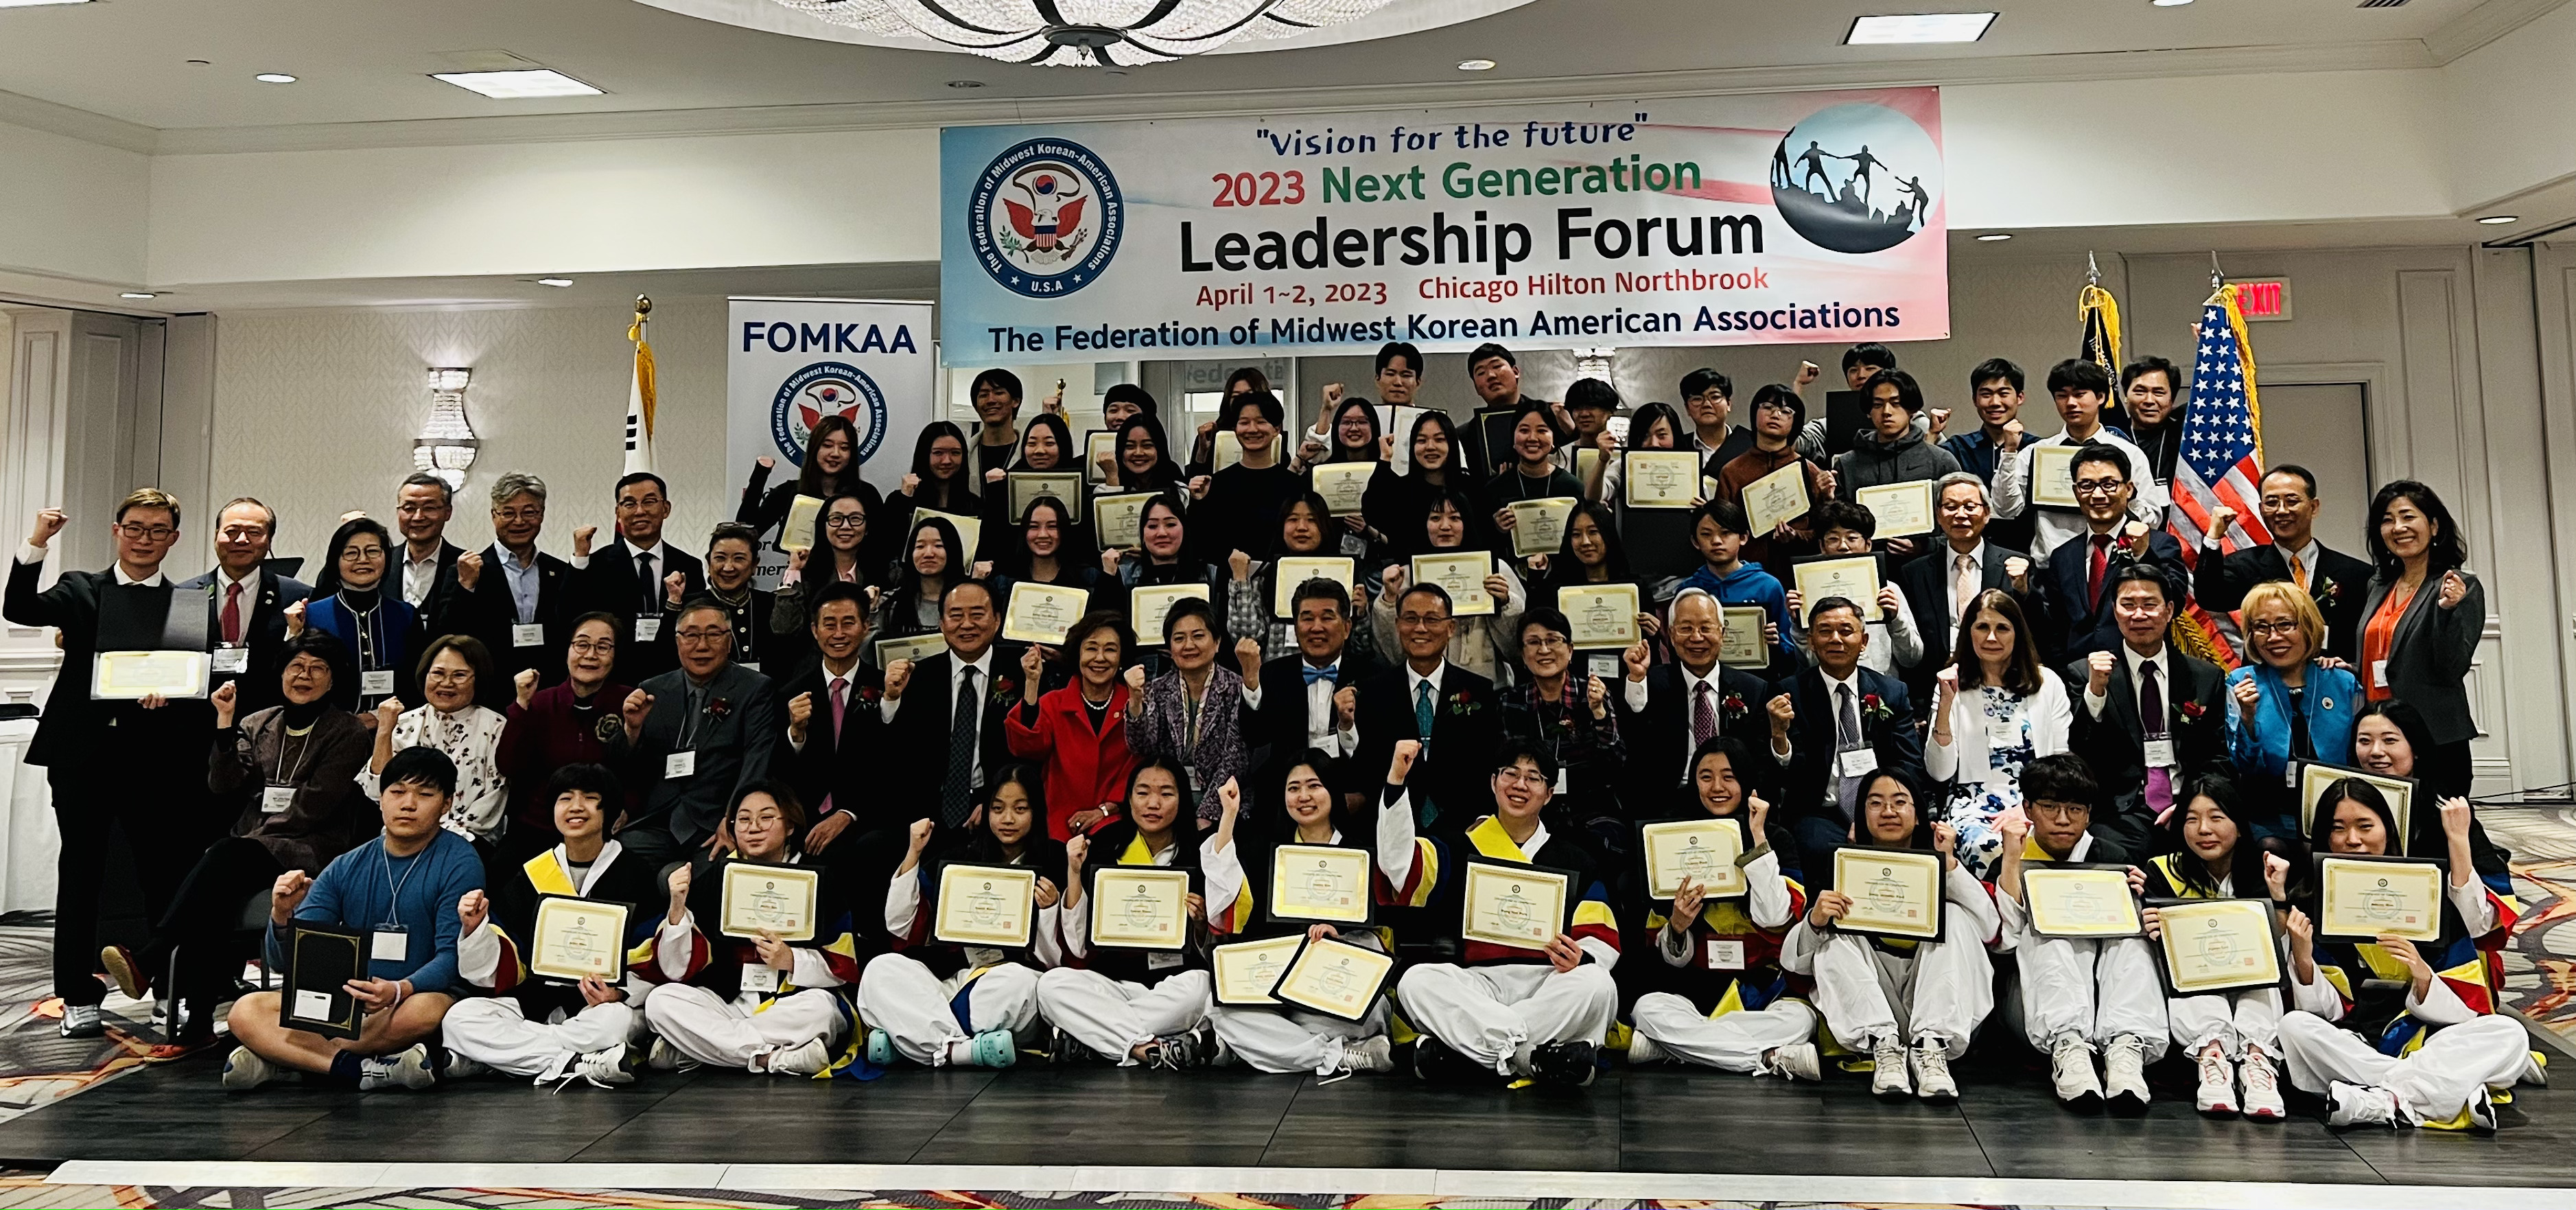 Участники Форума лидеров нового поколения, организованного Федерацией корейско-американских ассоциаций Среднего Запада.